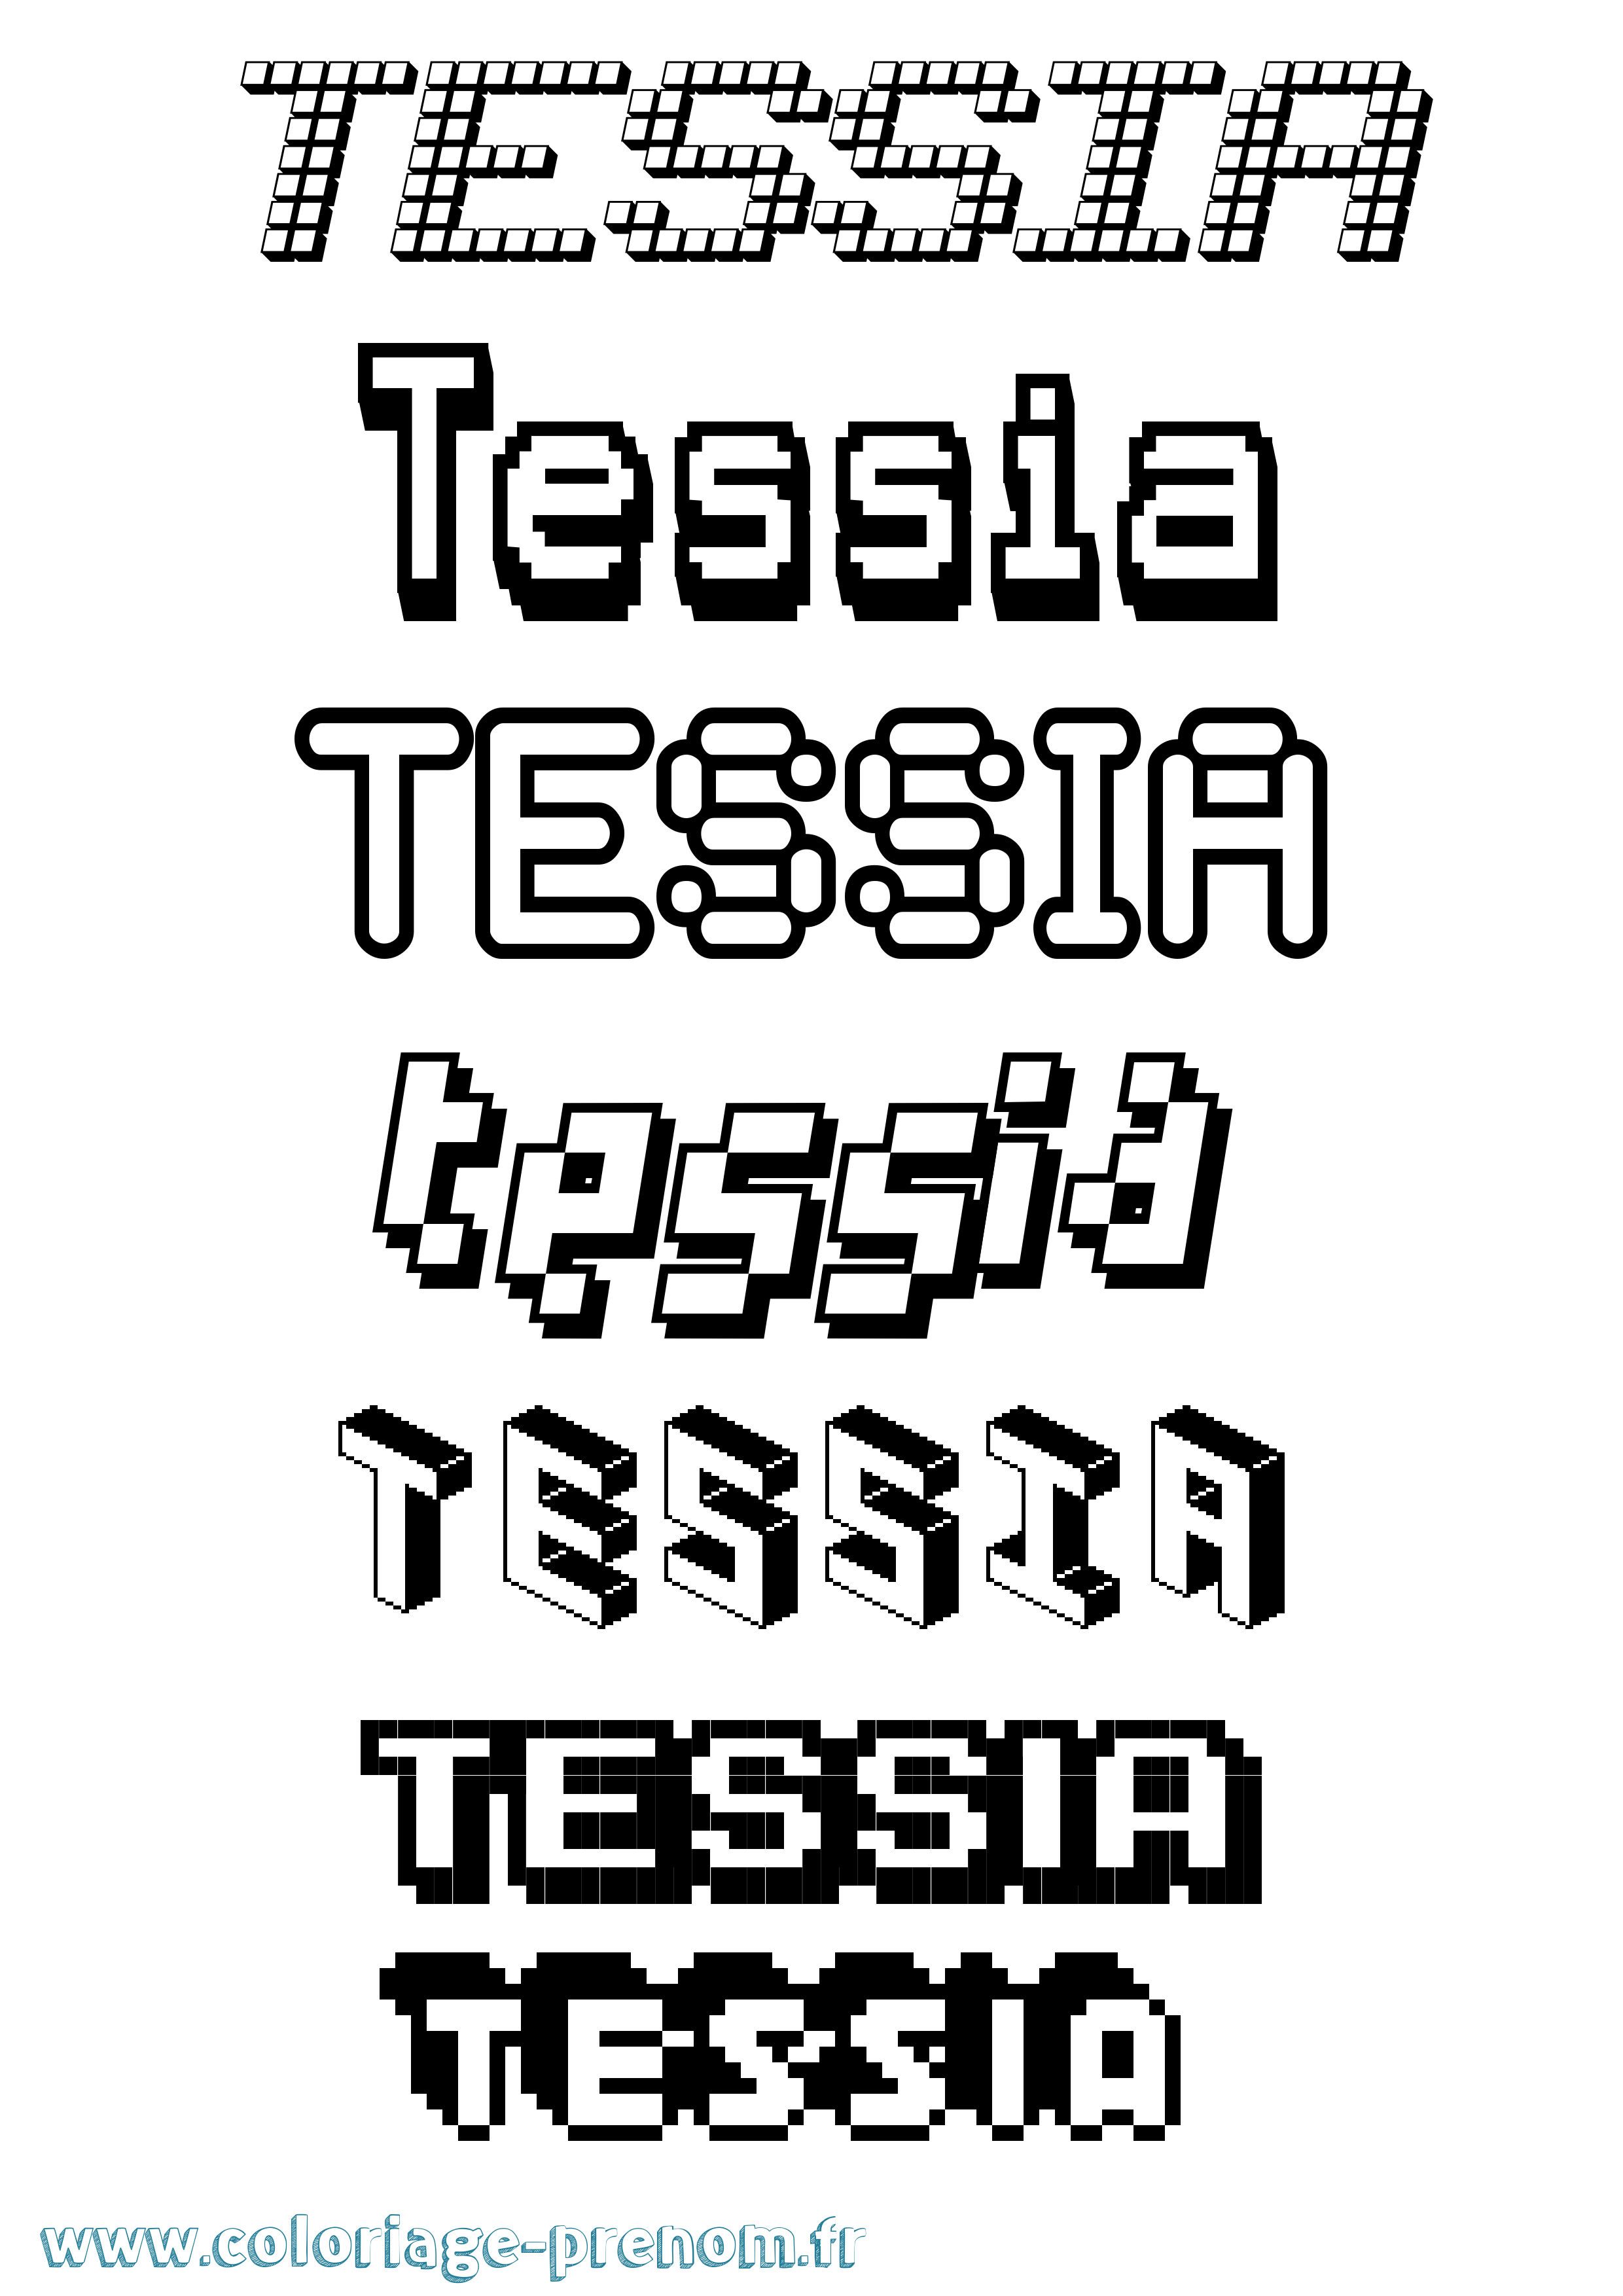 Coloriage prénom Tessia Pixel